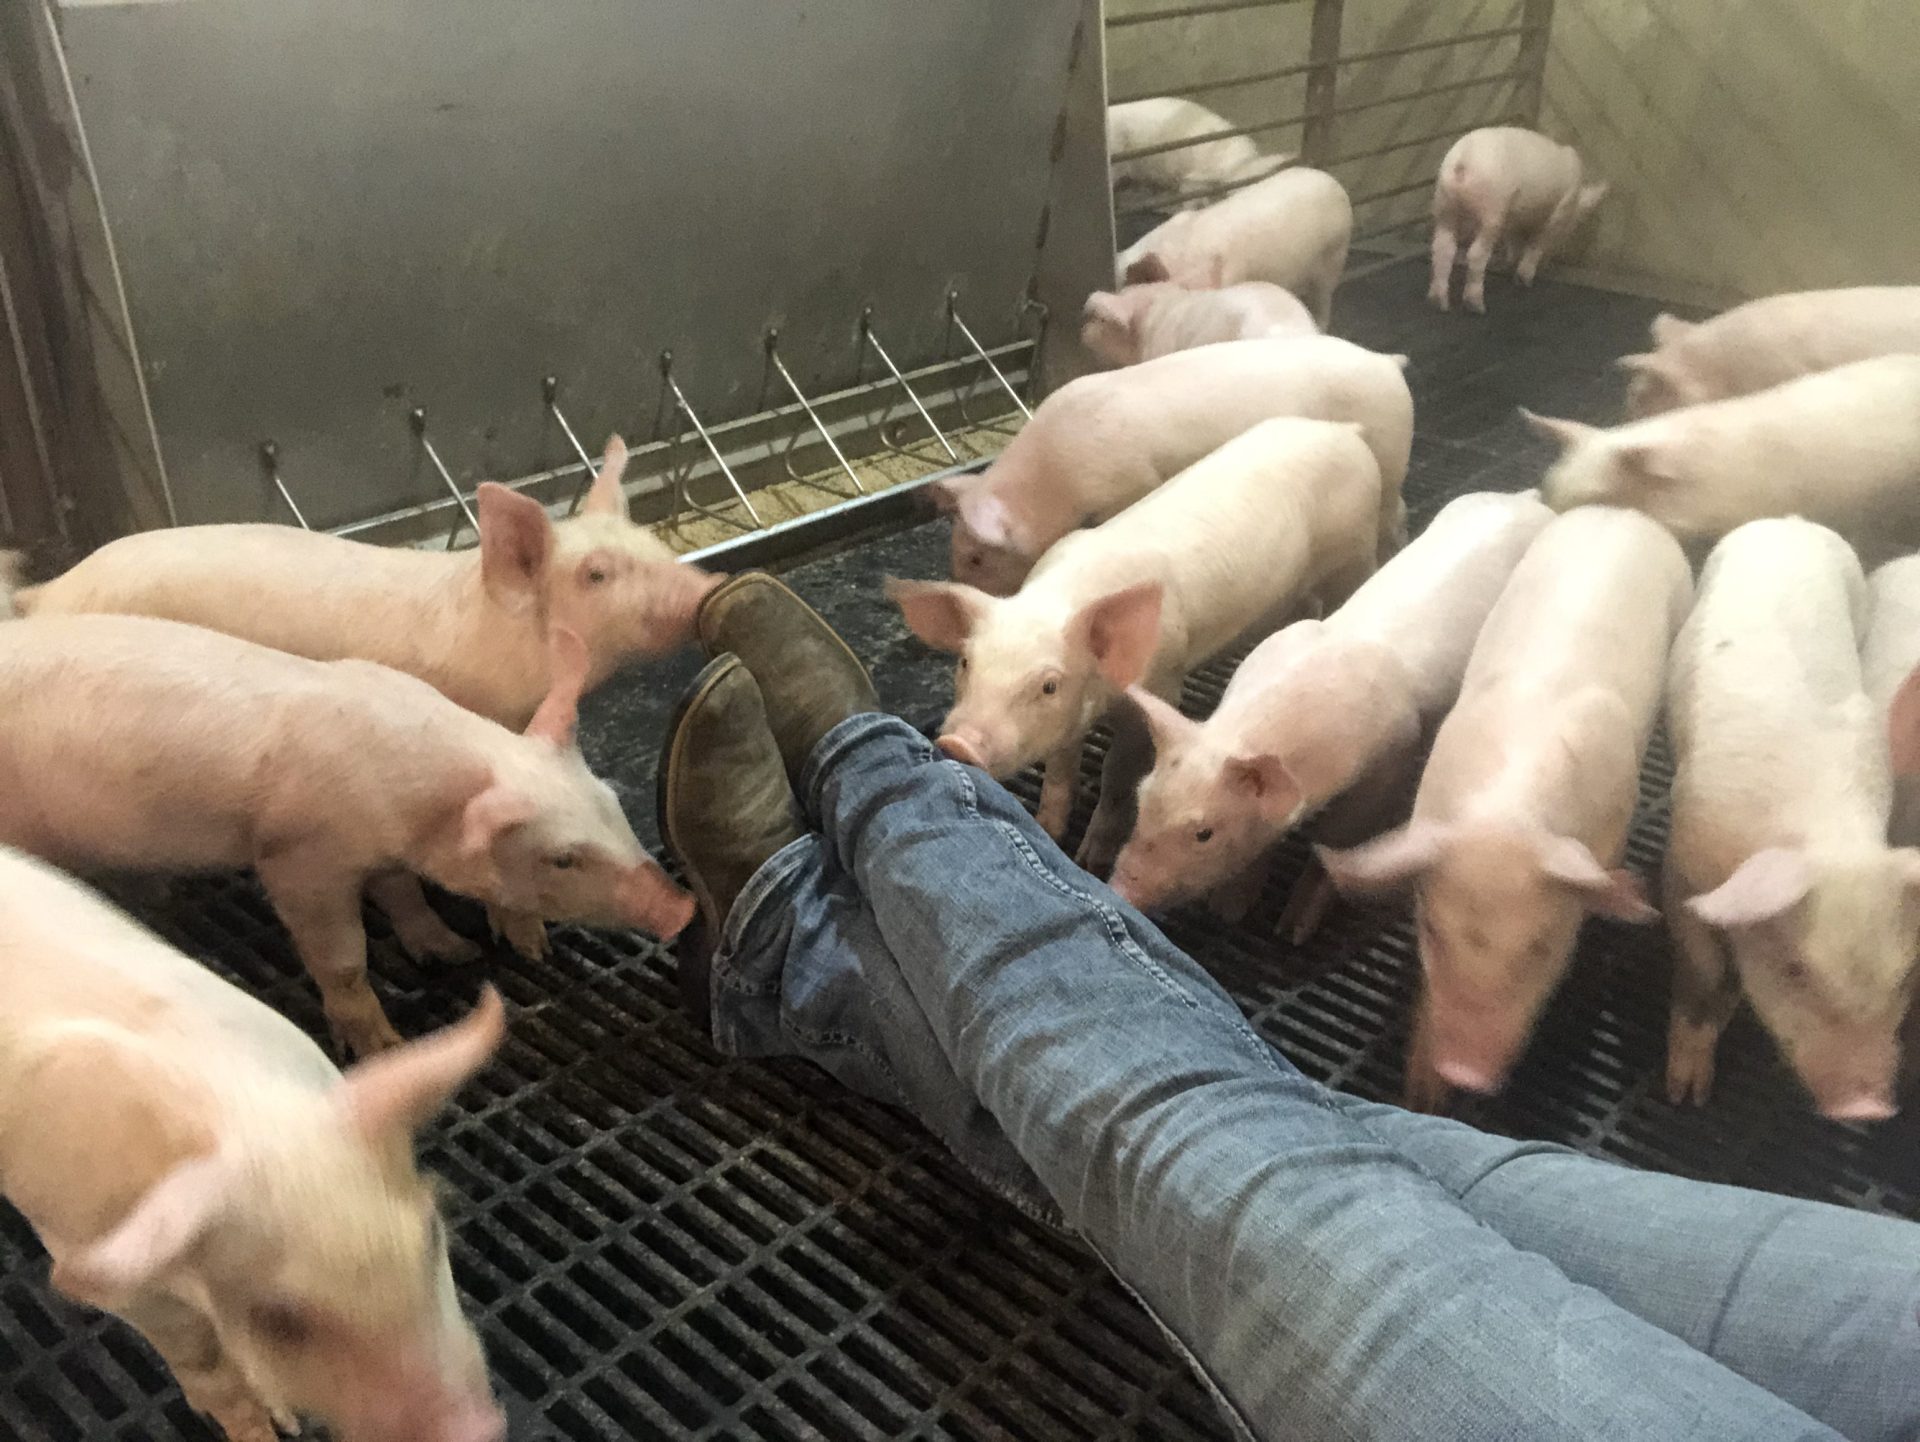 Good pork chops start on the farm by Farmwife Feeds. #pork #farmer #farmher #pigs